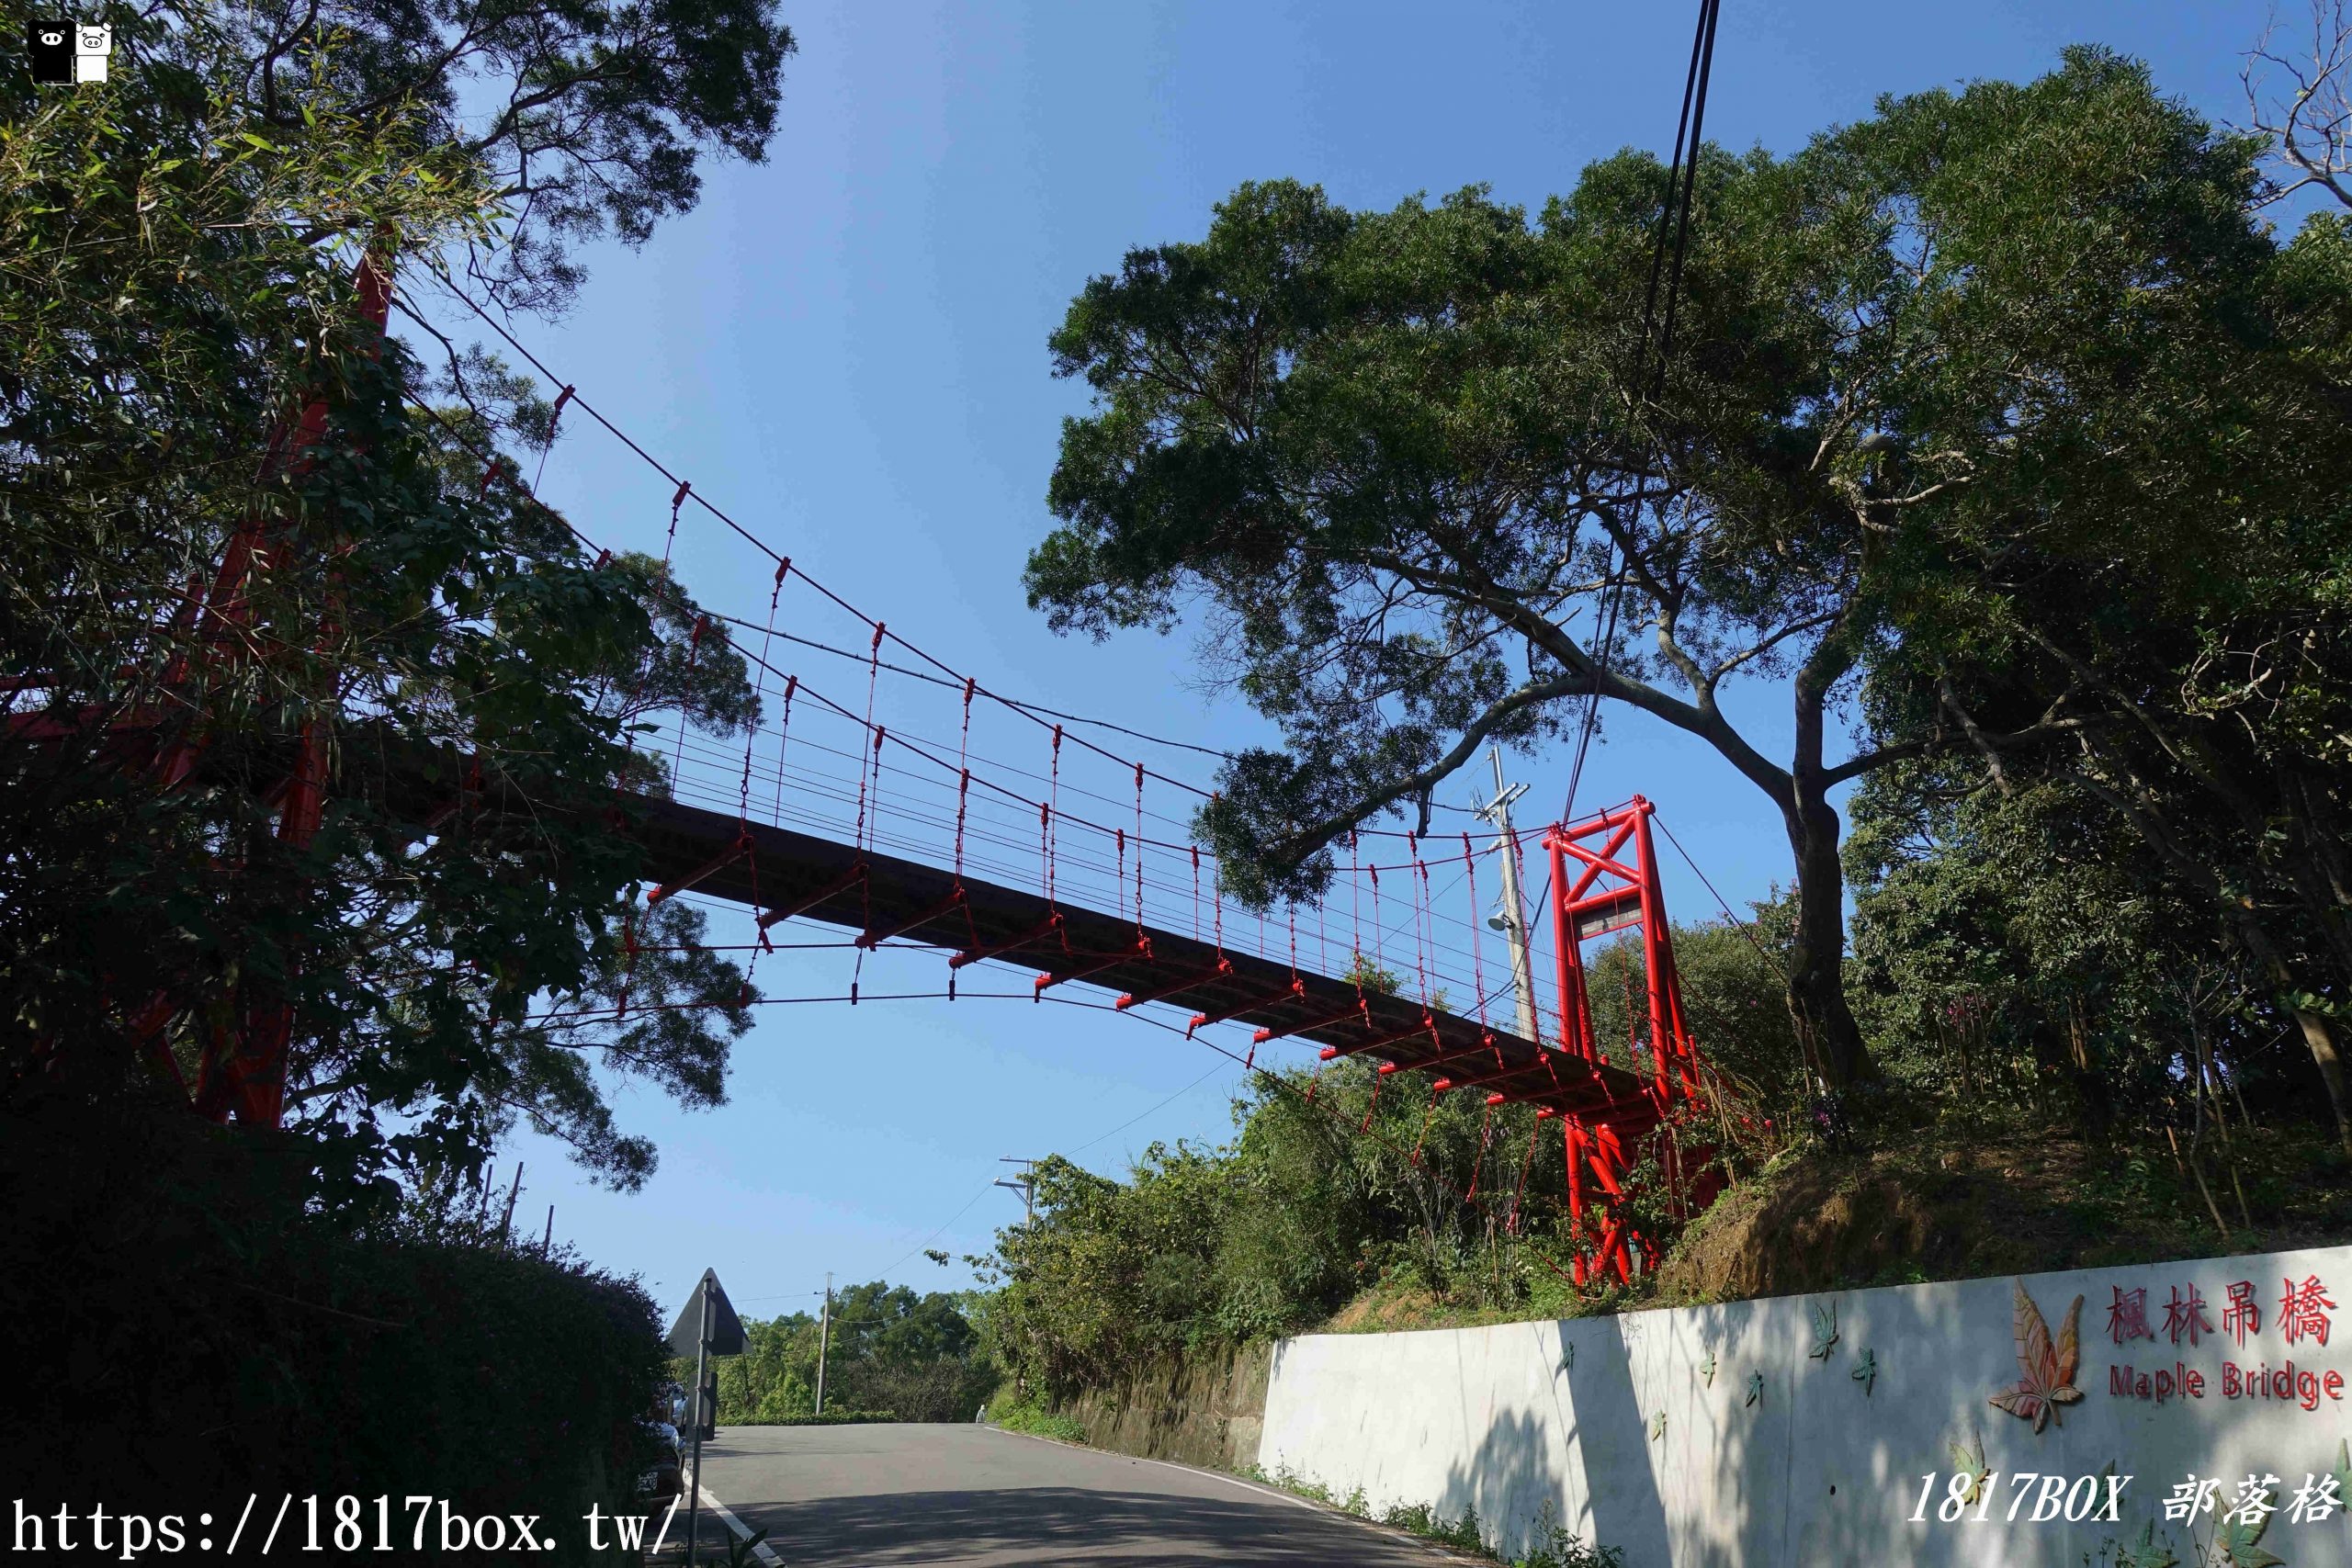 【苗栗。頭份】楓林吊橋。紅色吊橋跨越老崎產業道路。頭份後花園